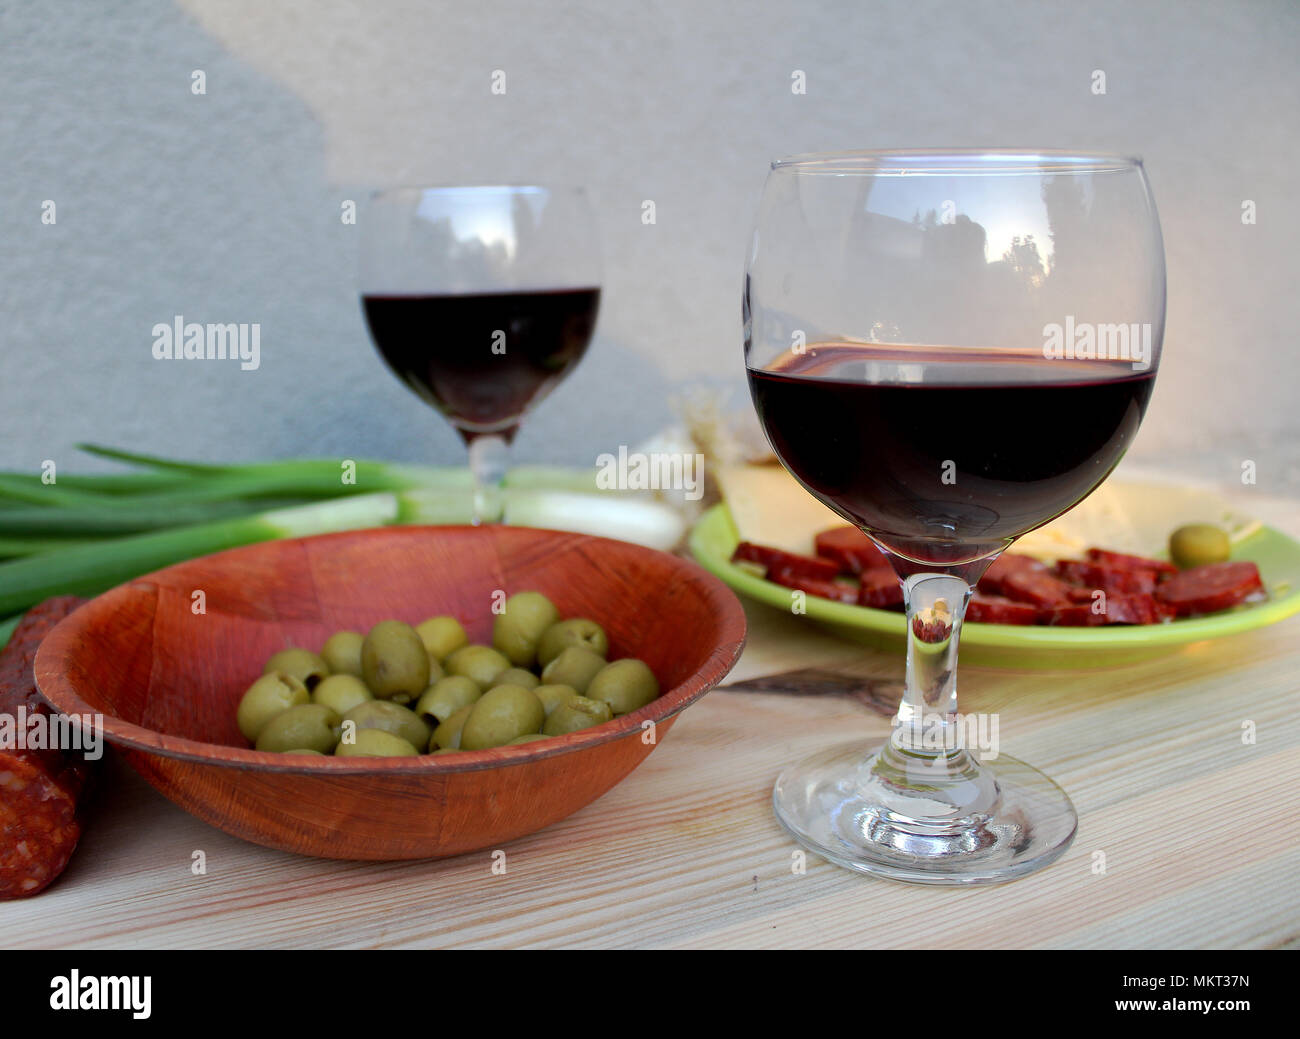 Immer noch leben - Objekte - Essen und Getränke - zwei Gläser Wein mit Oliven, Käse und Wurst Stockfoto